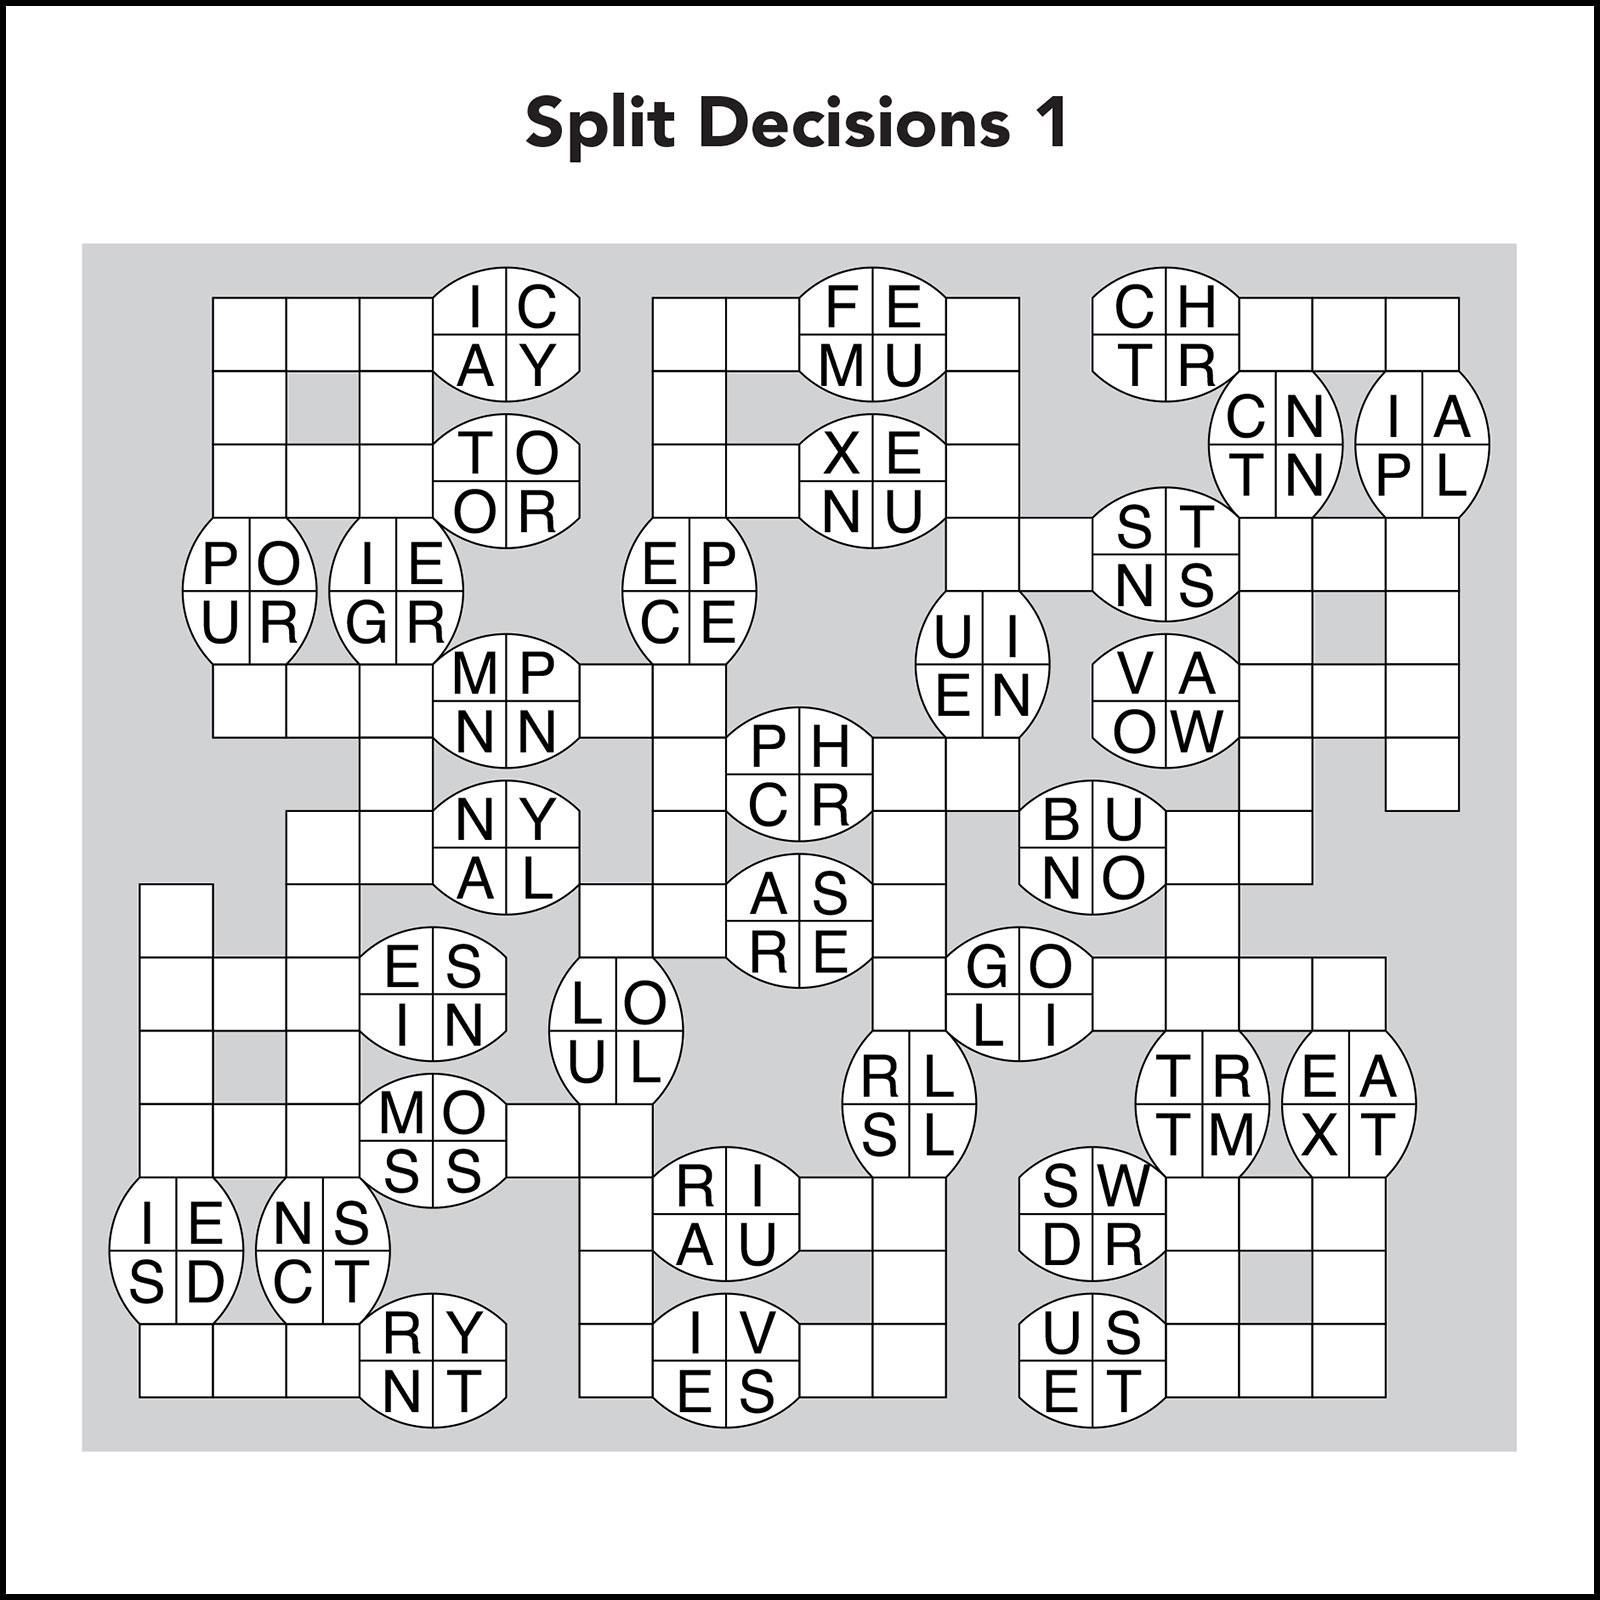 A split decisions puzzle